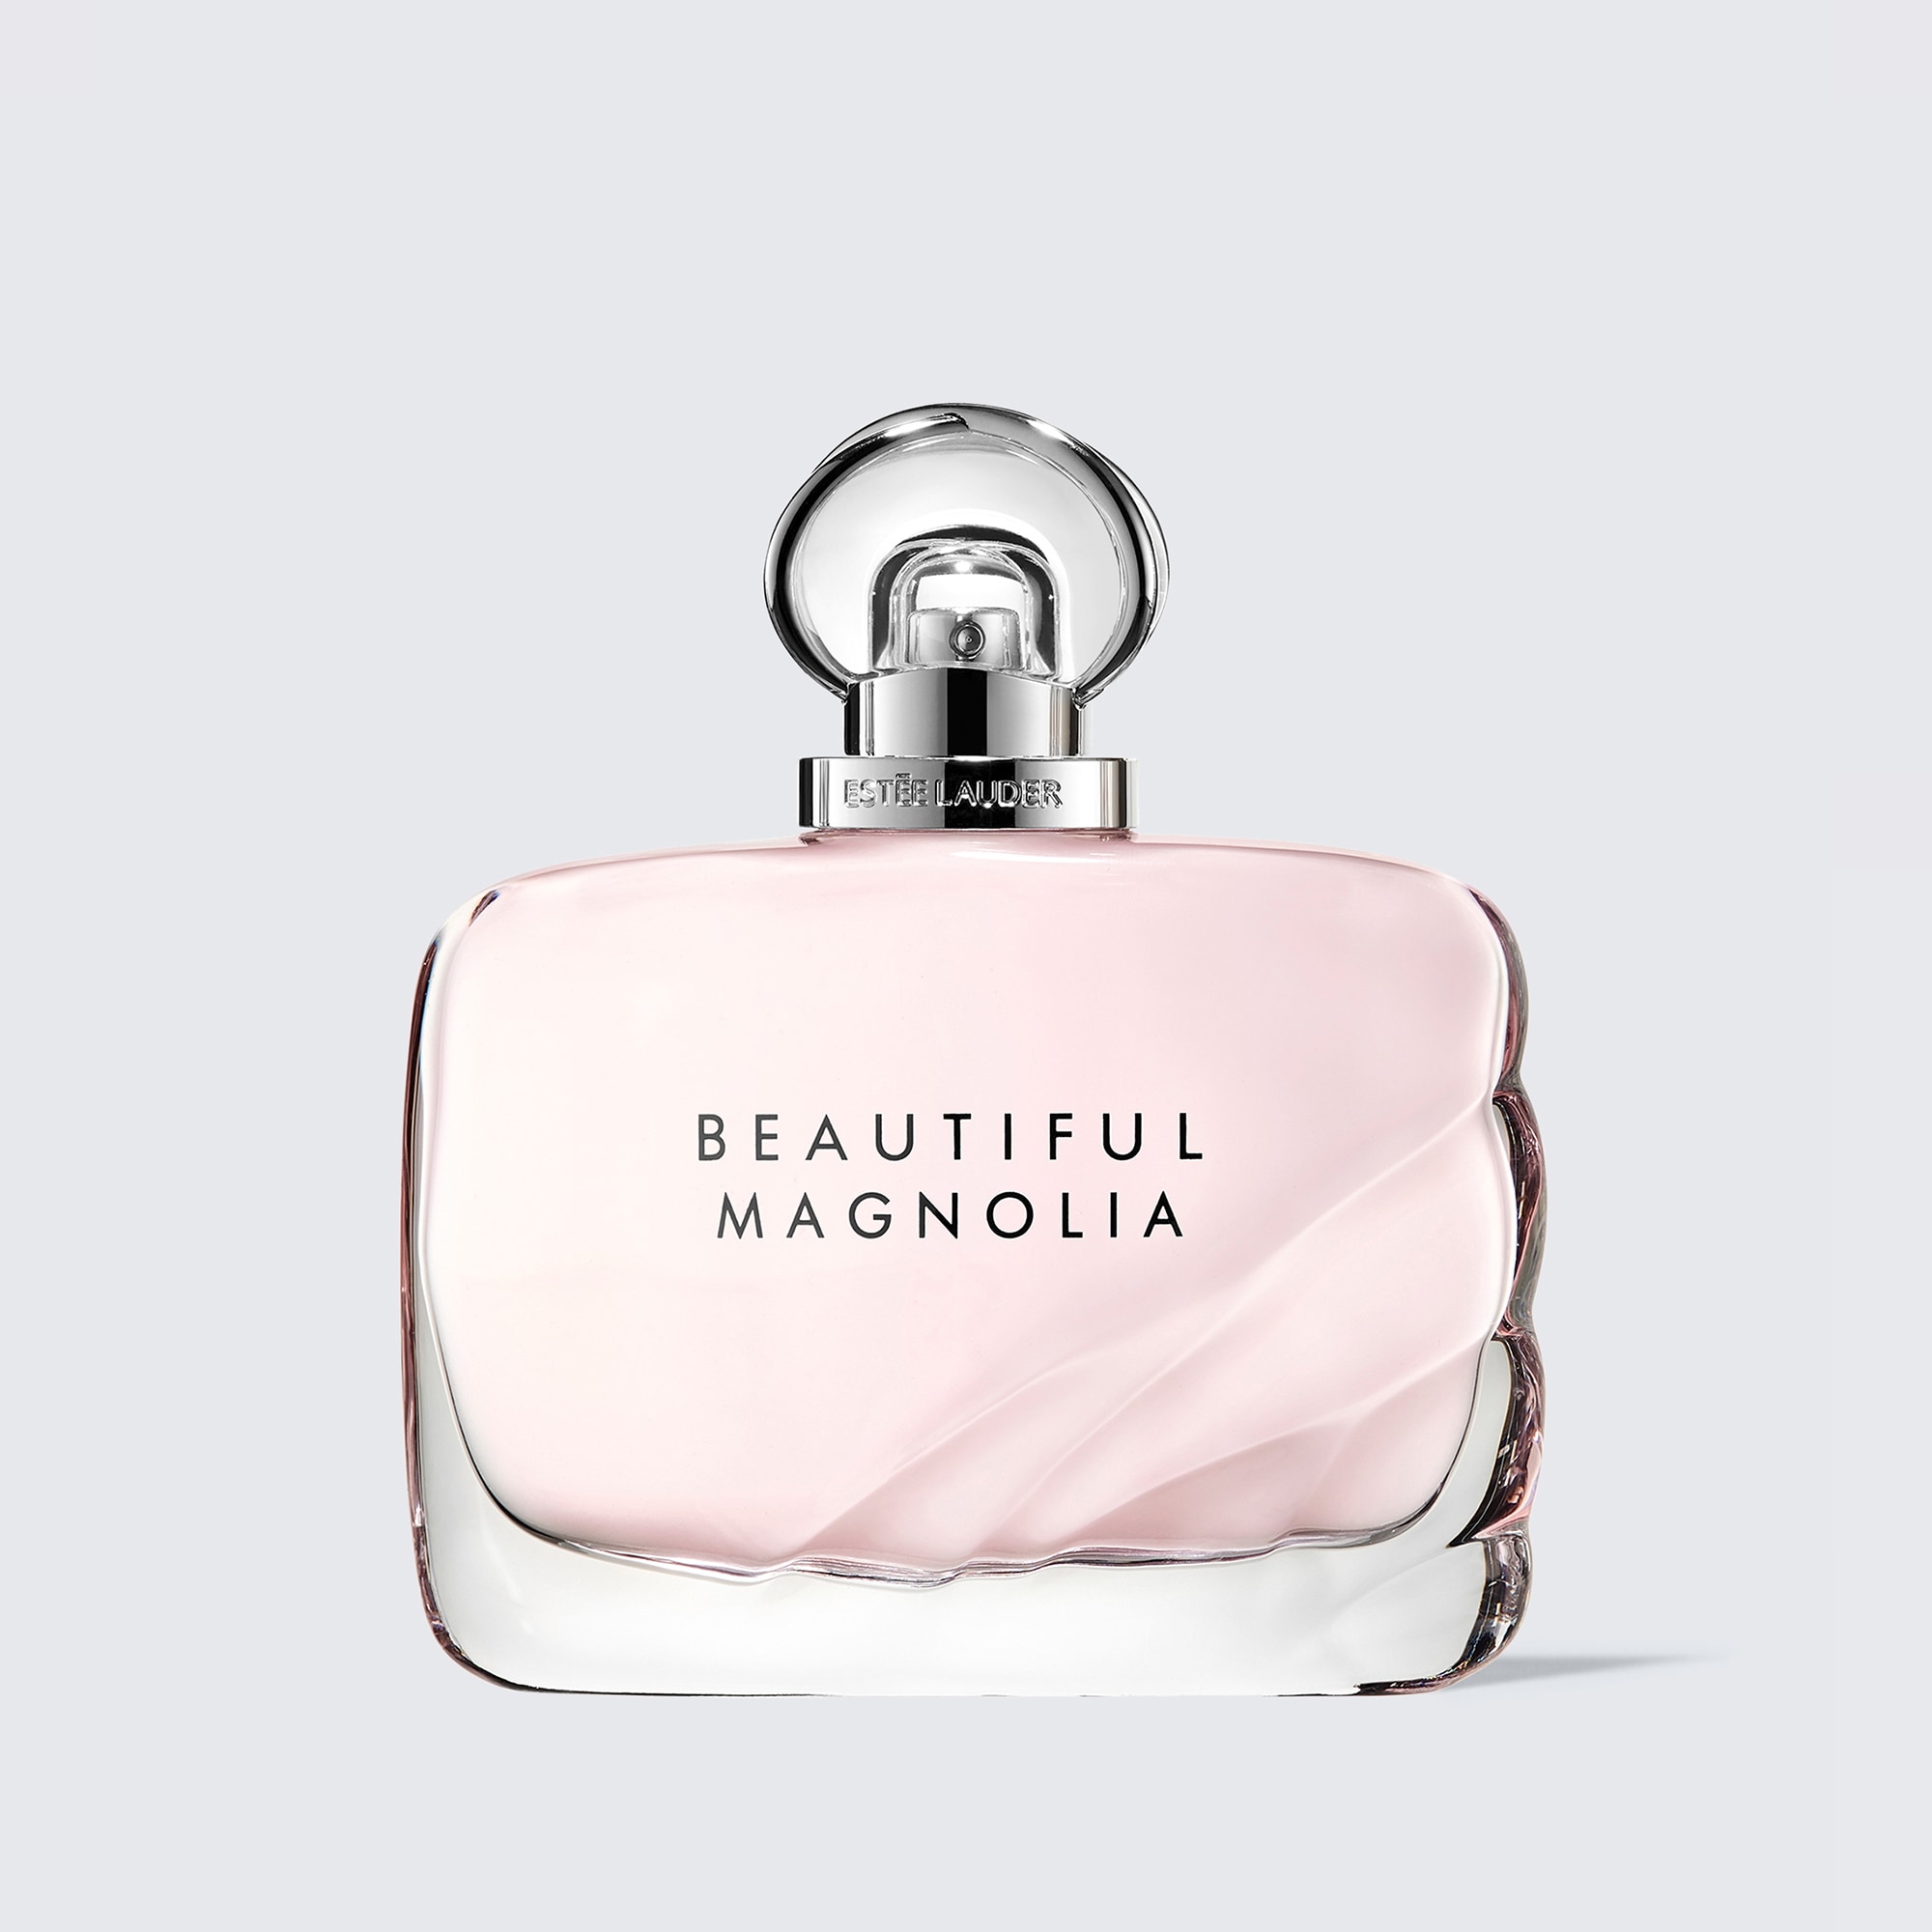 Beautiful Magnolia | Estee Lauder - Official Site